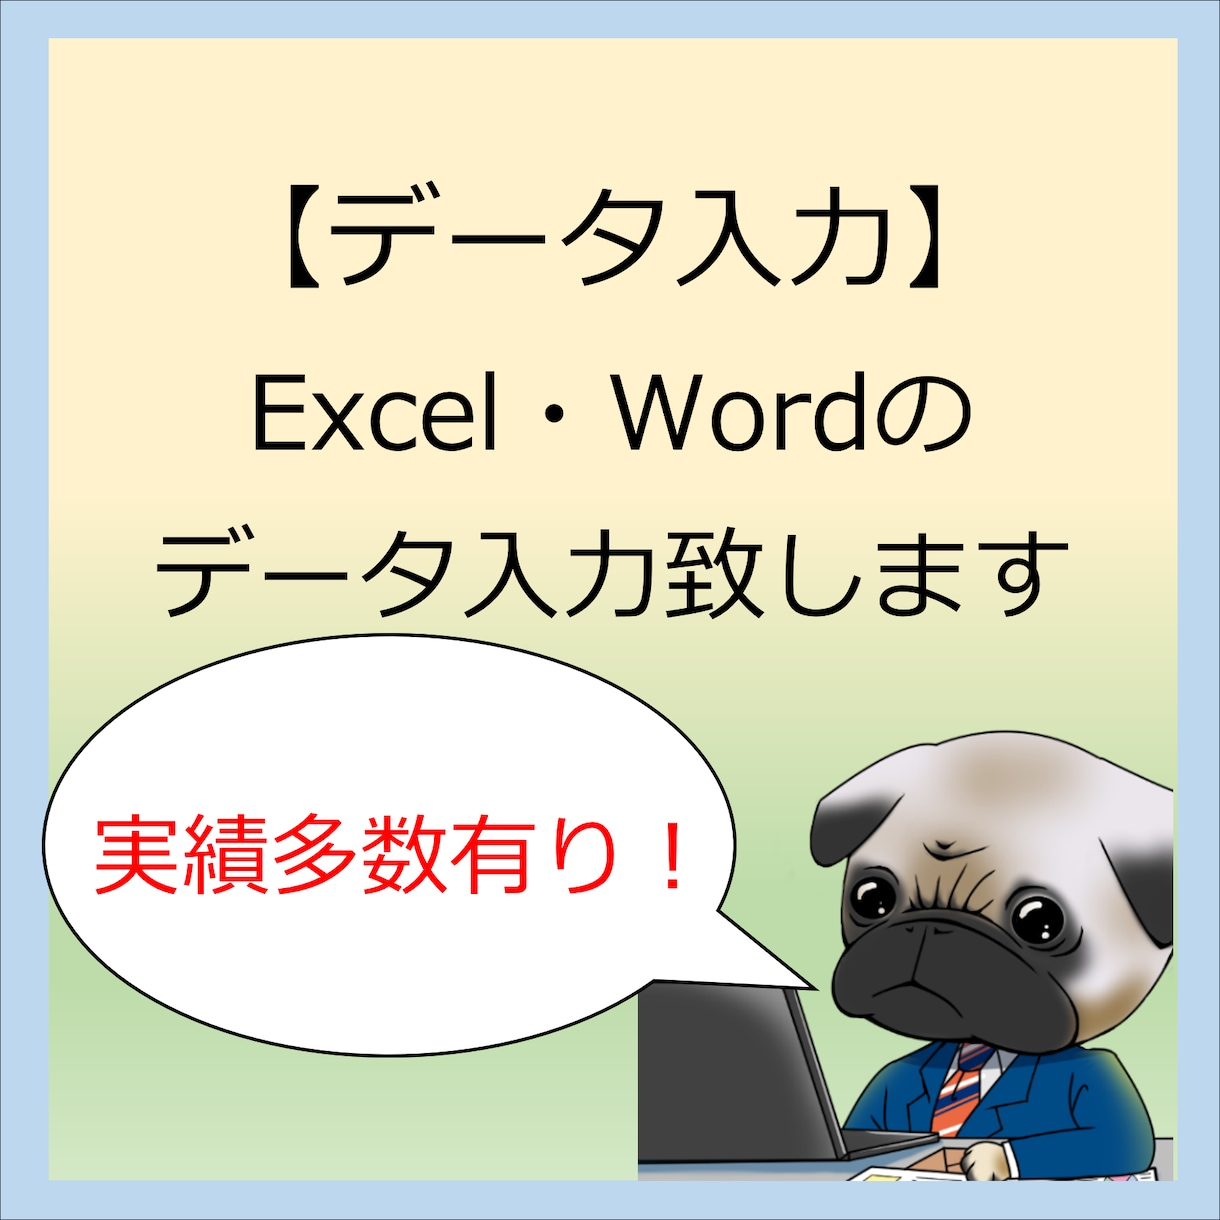 Excel・Wordのデータ入力承ります 現役エンジニアがスピーディーに対応致します イメージ1